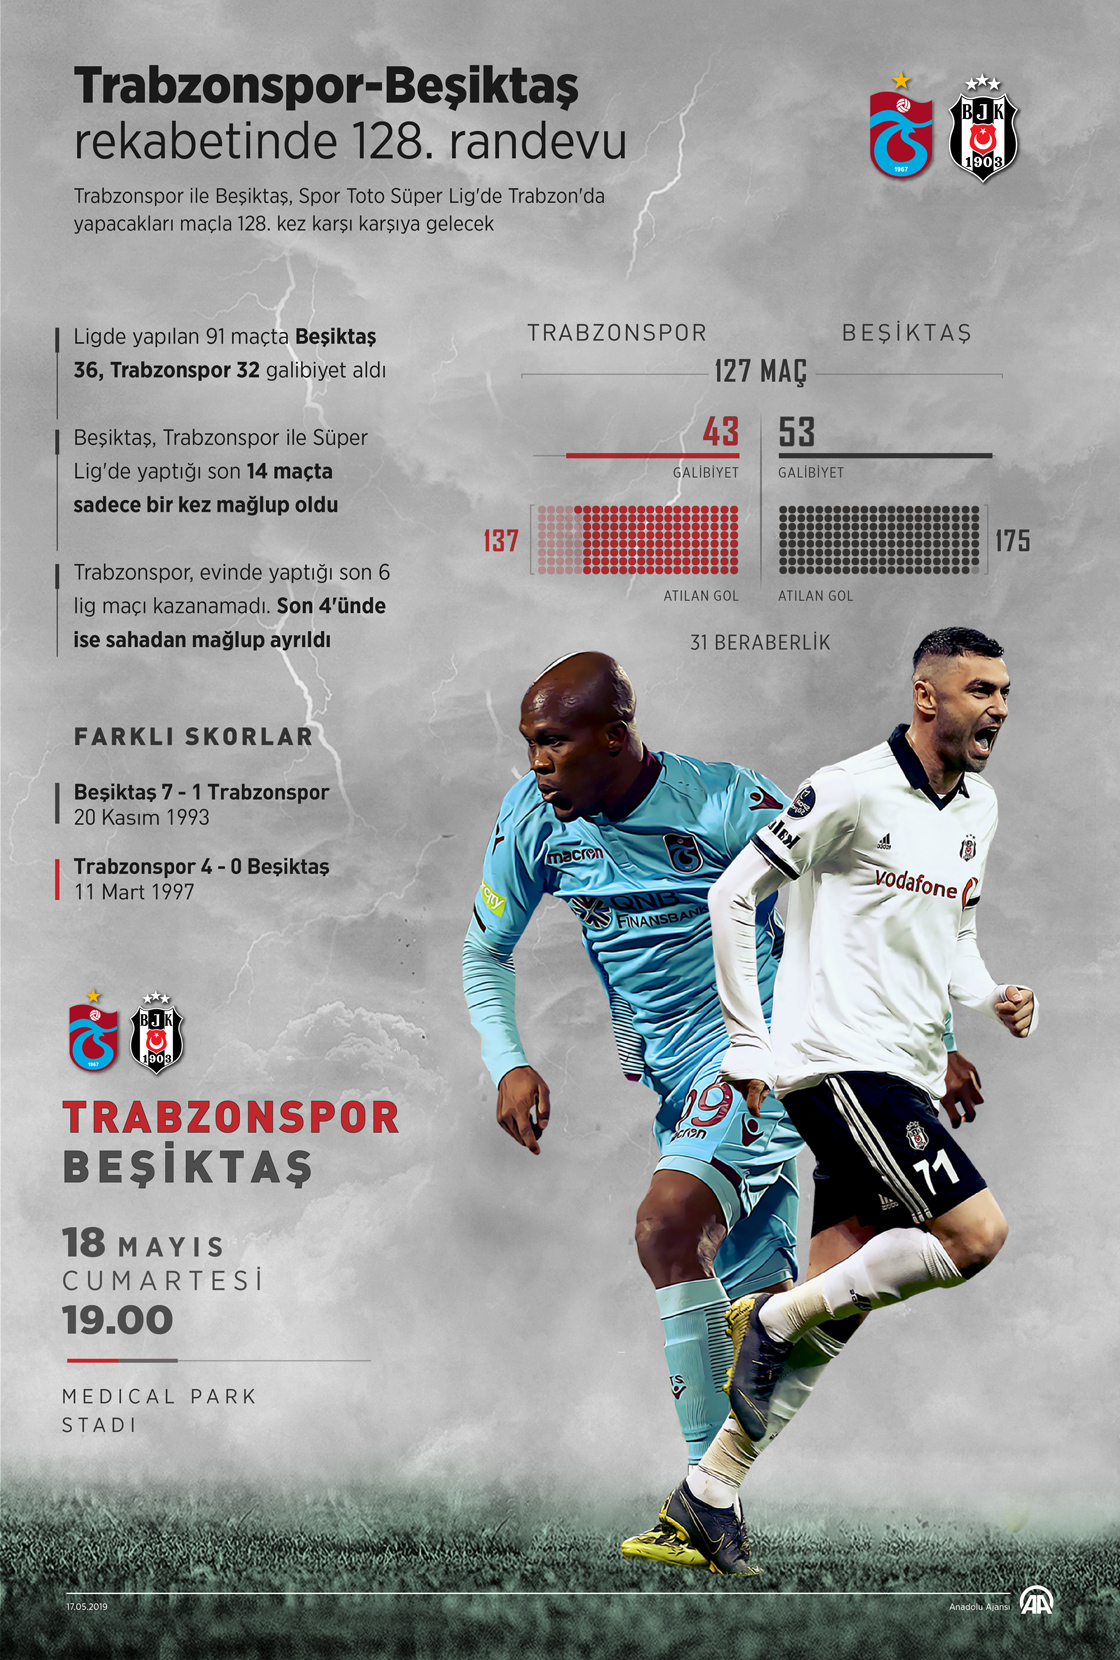 Trabzonspor-Beşiktaş rekabetinde 128. randevu